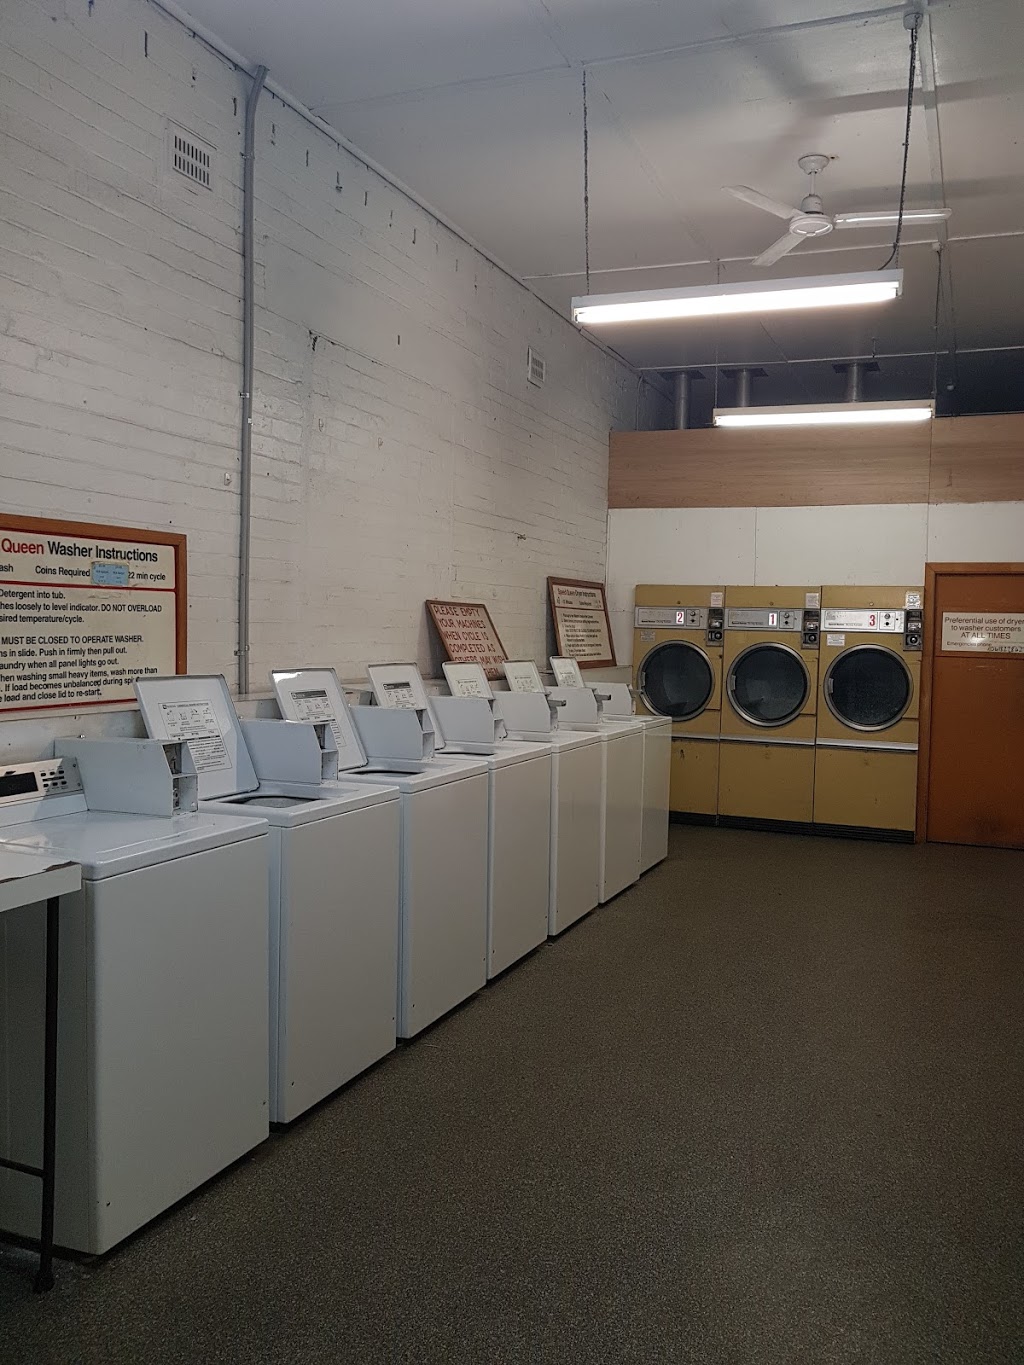 Kyogle Laundromat | laundry | 39 Summerland Way, Kyogle NSW 2474, Australia | 0407750498 OR +61 407 750 498